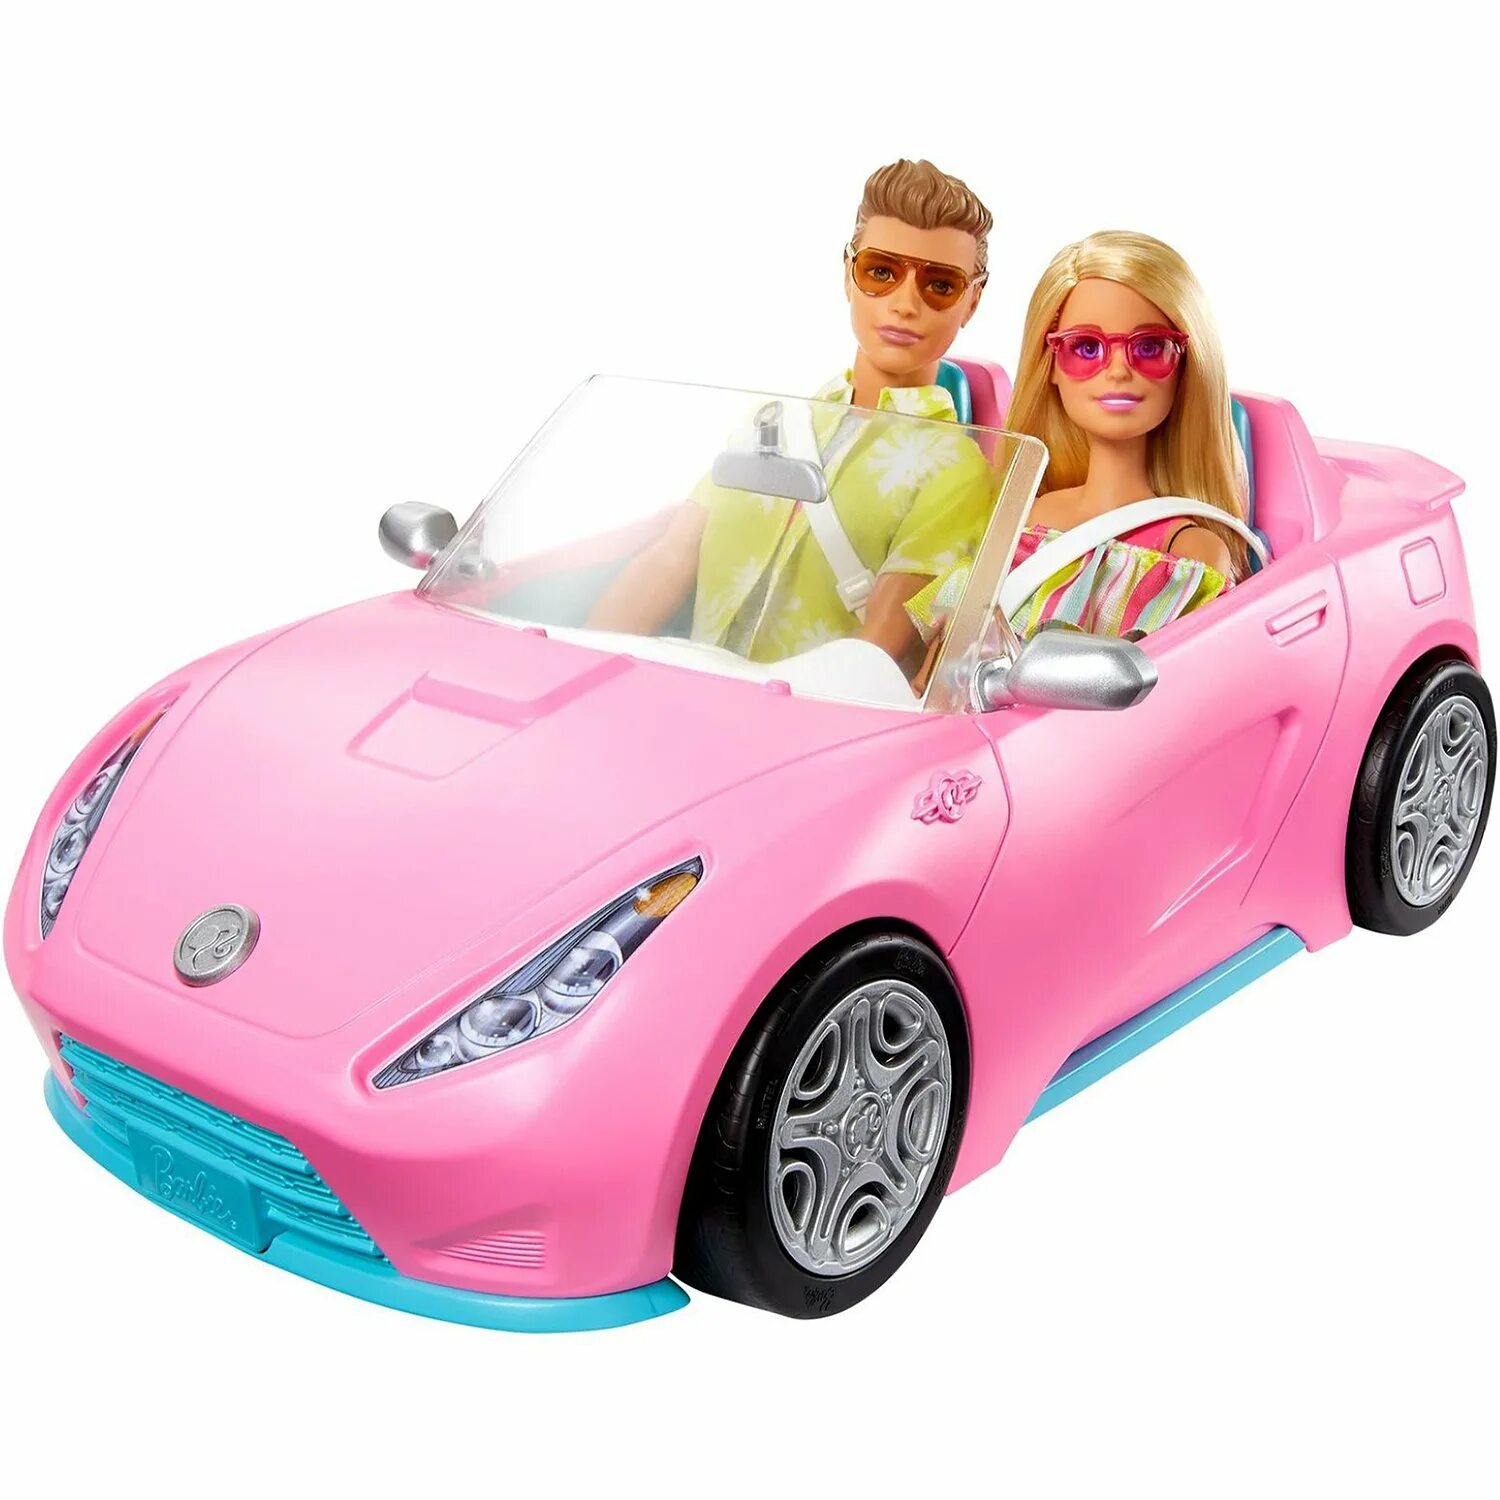 Купить куклы машину. Набор игровой Barbie 2куклы +автомобиль +аксессуары gjb71. Набор Барби gjb71. Набор Барби и Кен с машиной. Набор Барби Кен машина бассейн.